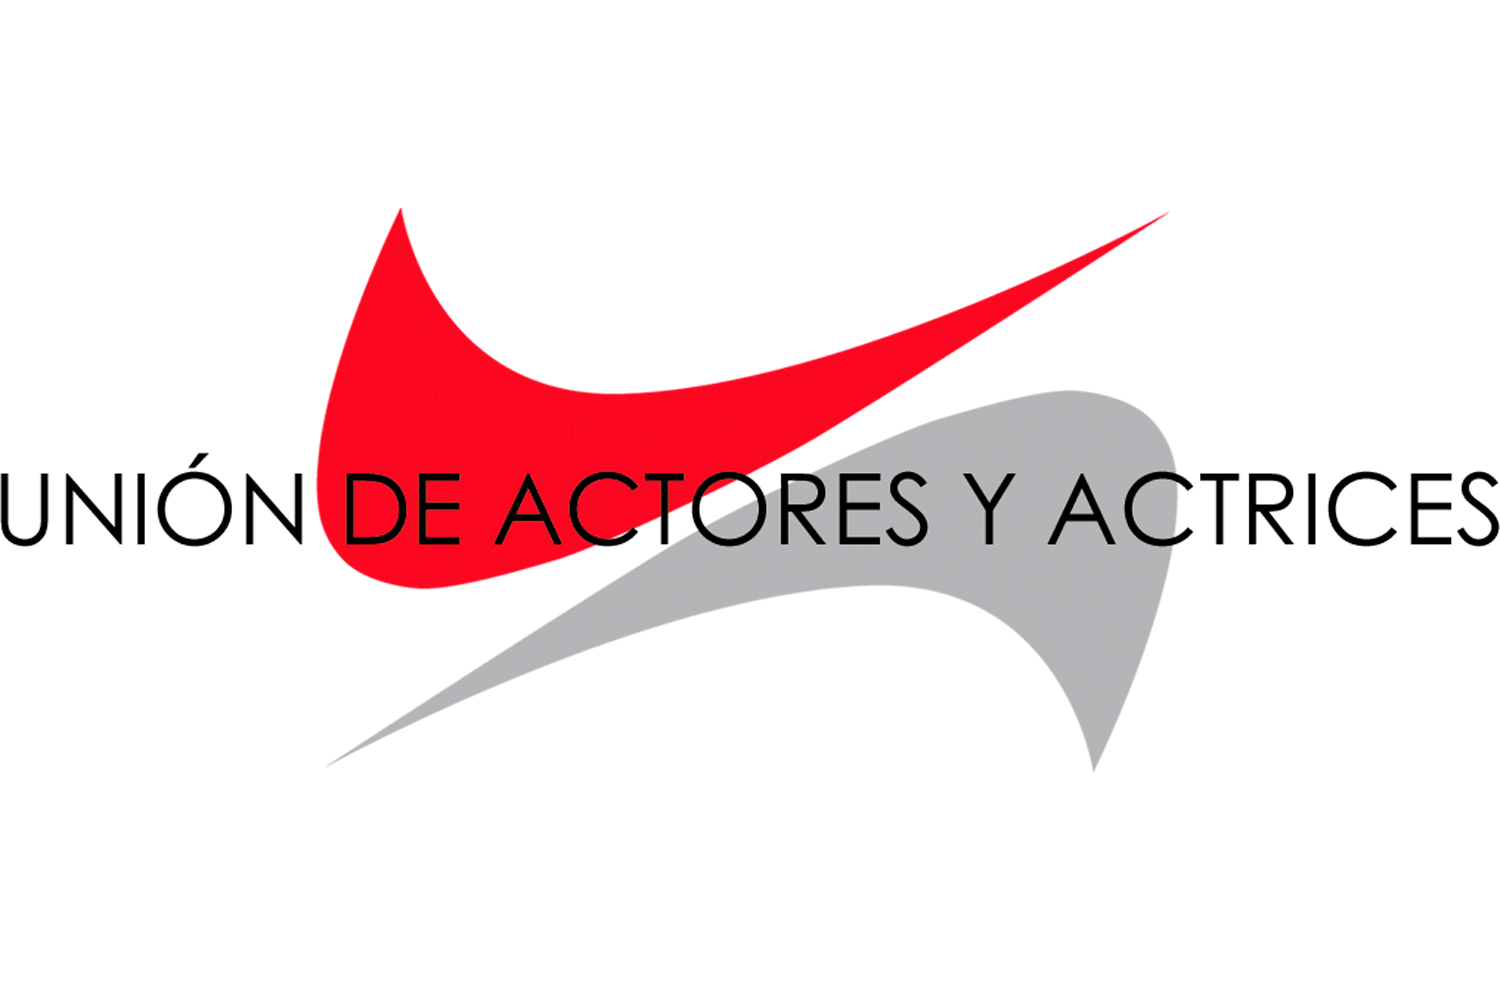 La Unión de Actores y Actrices decide posponer su gala de premios